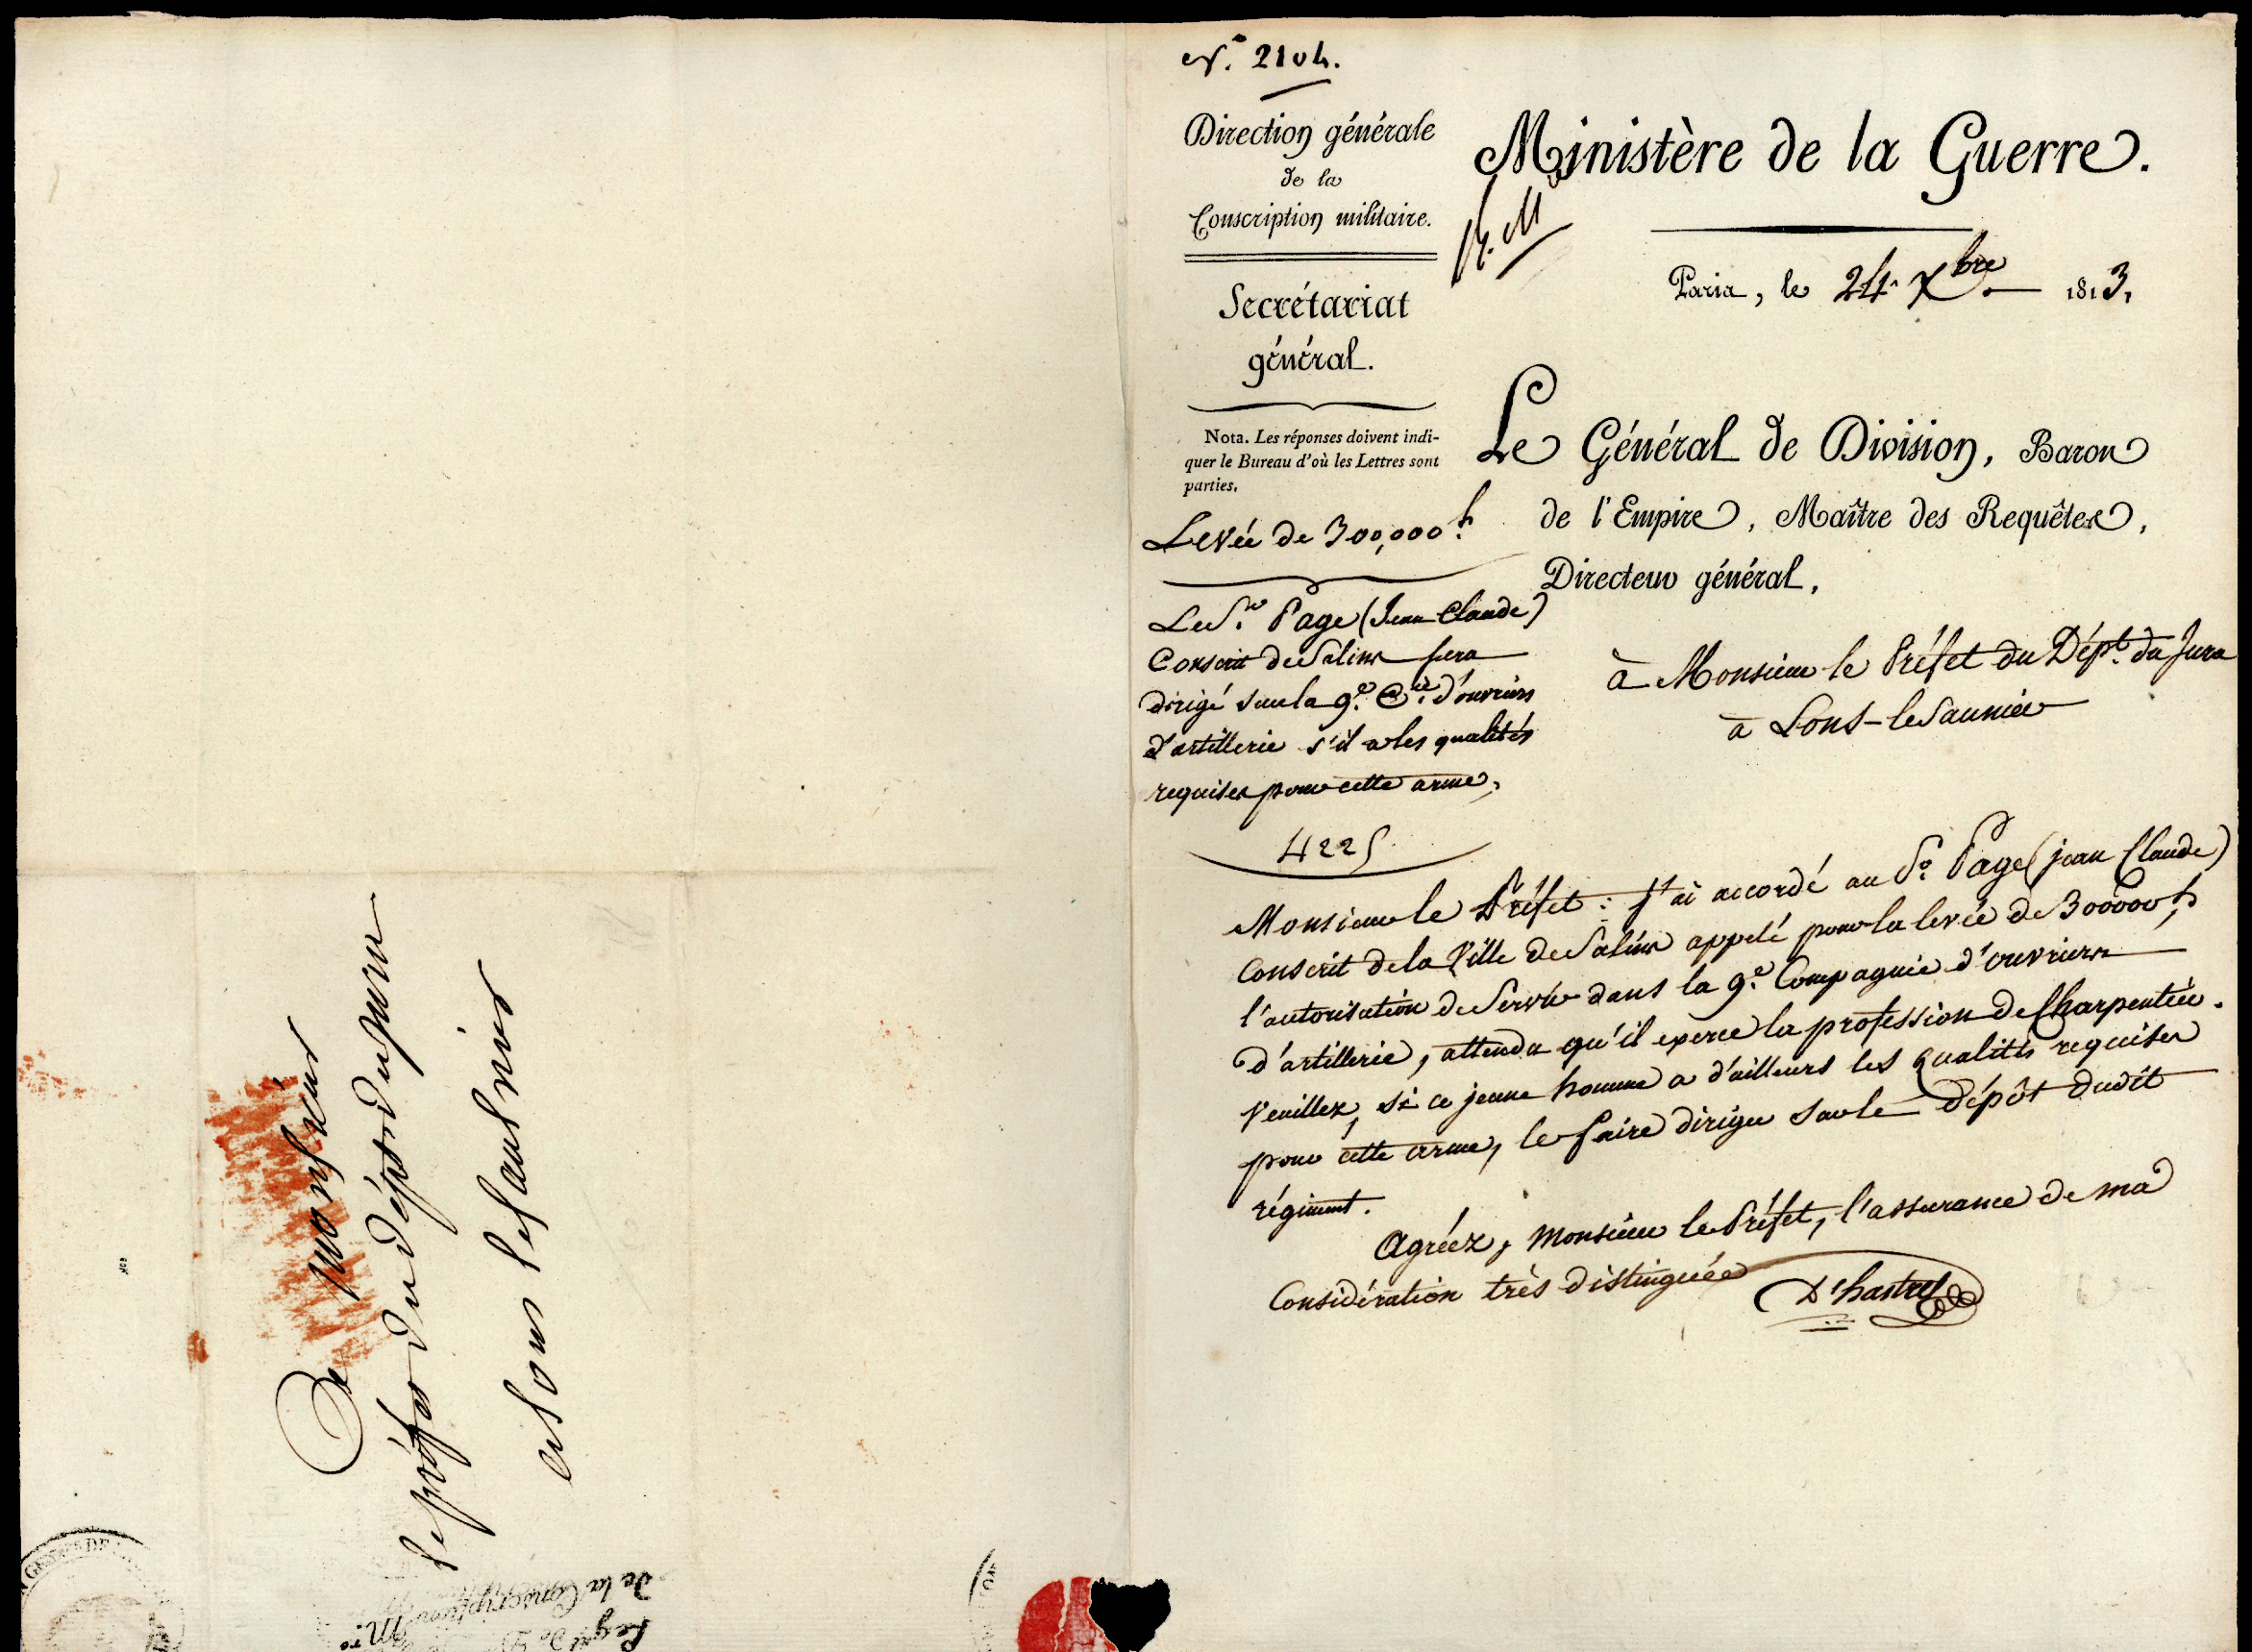 Referenz: hastrel-de-rivedoux-etienne-d-general-gouverneur-de-hambourg-1810-baron